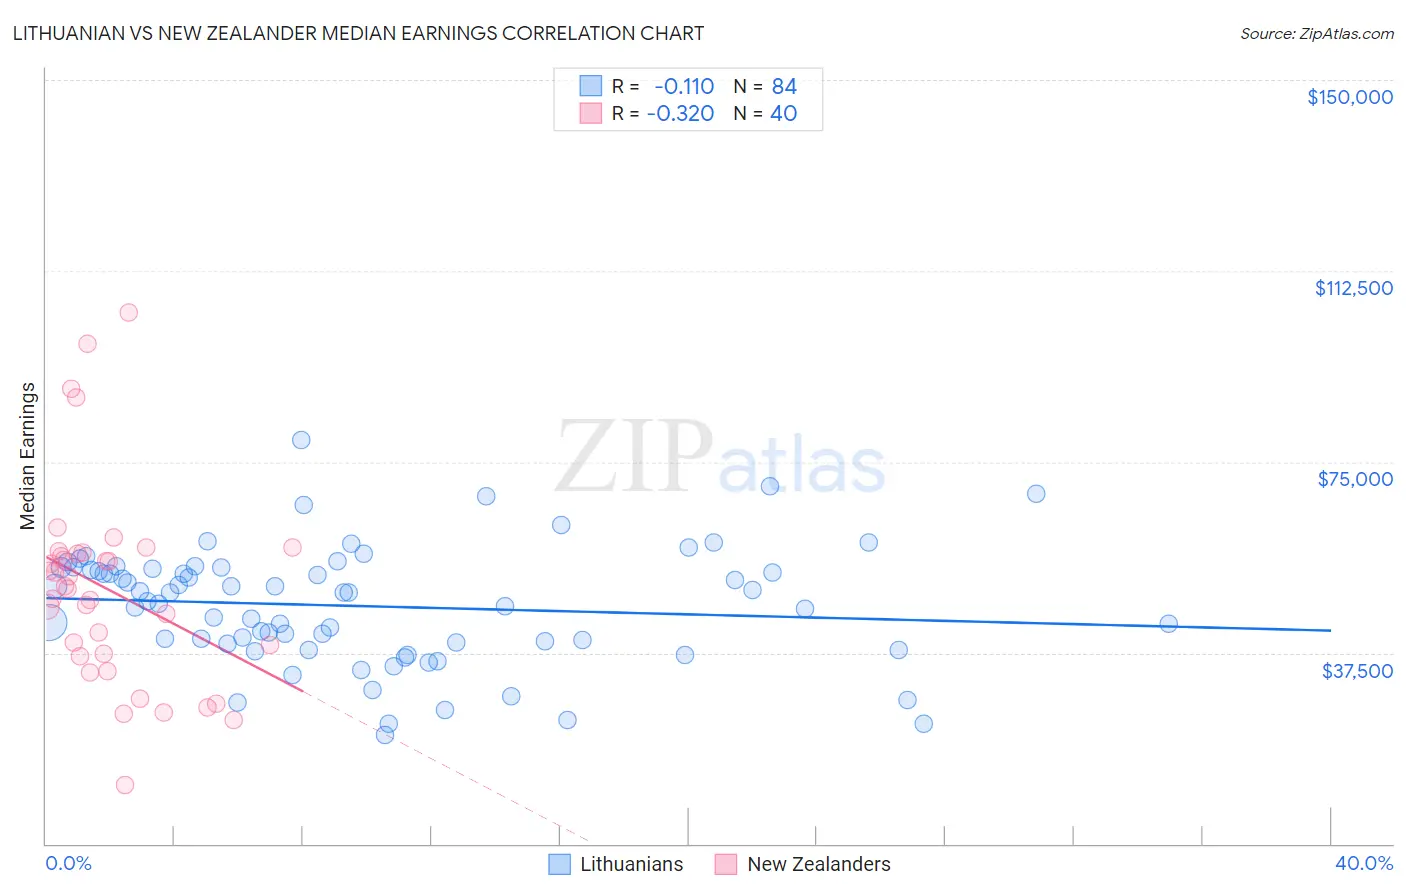 Lithuanian vs New Zealander Median Earnings